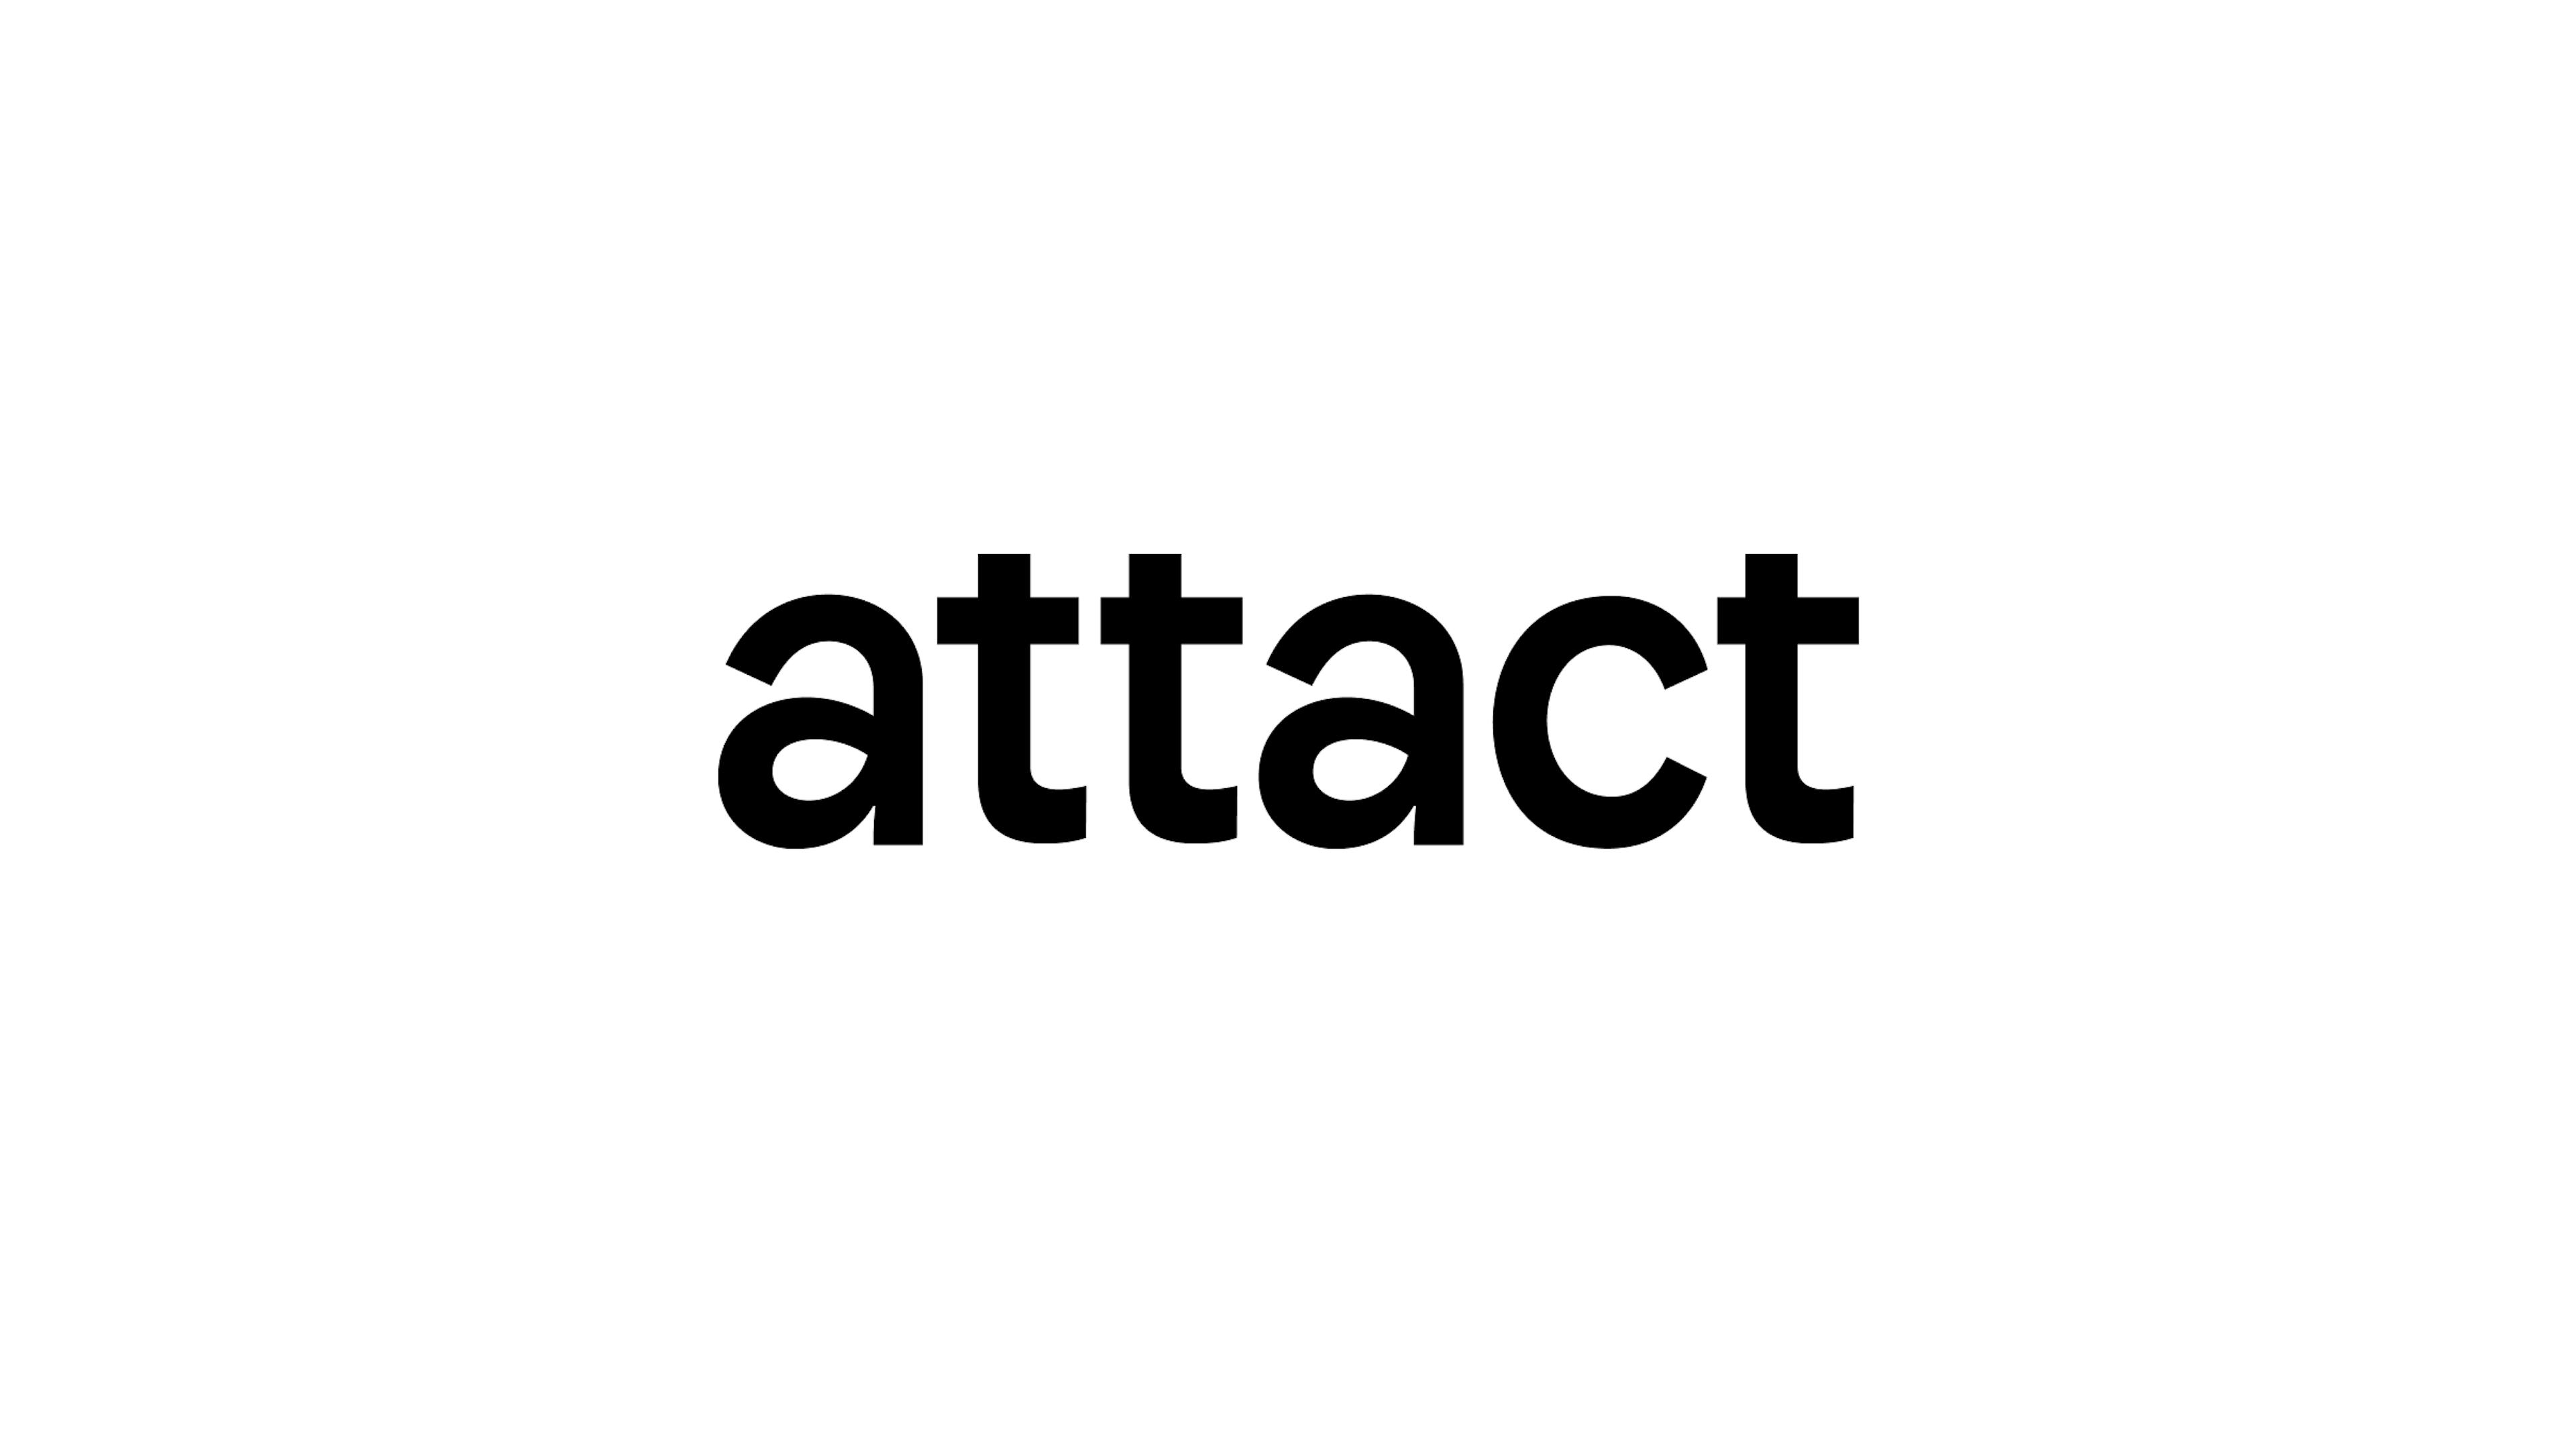 attact wordmark